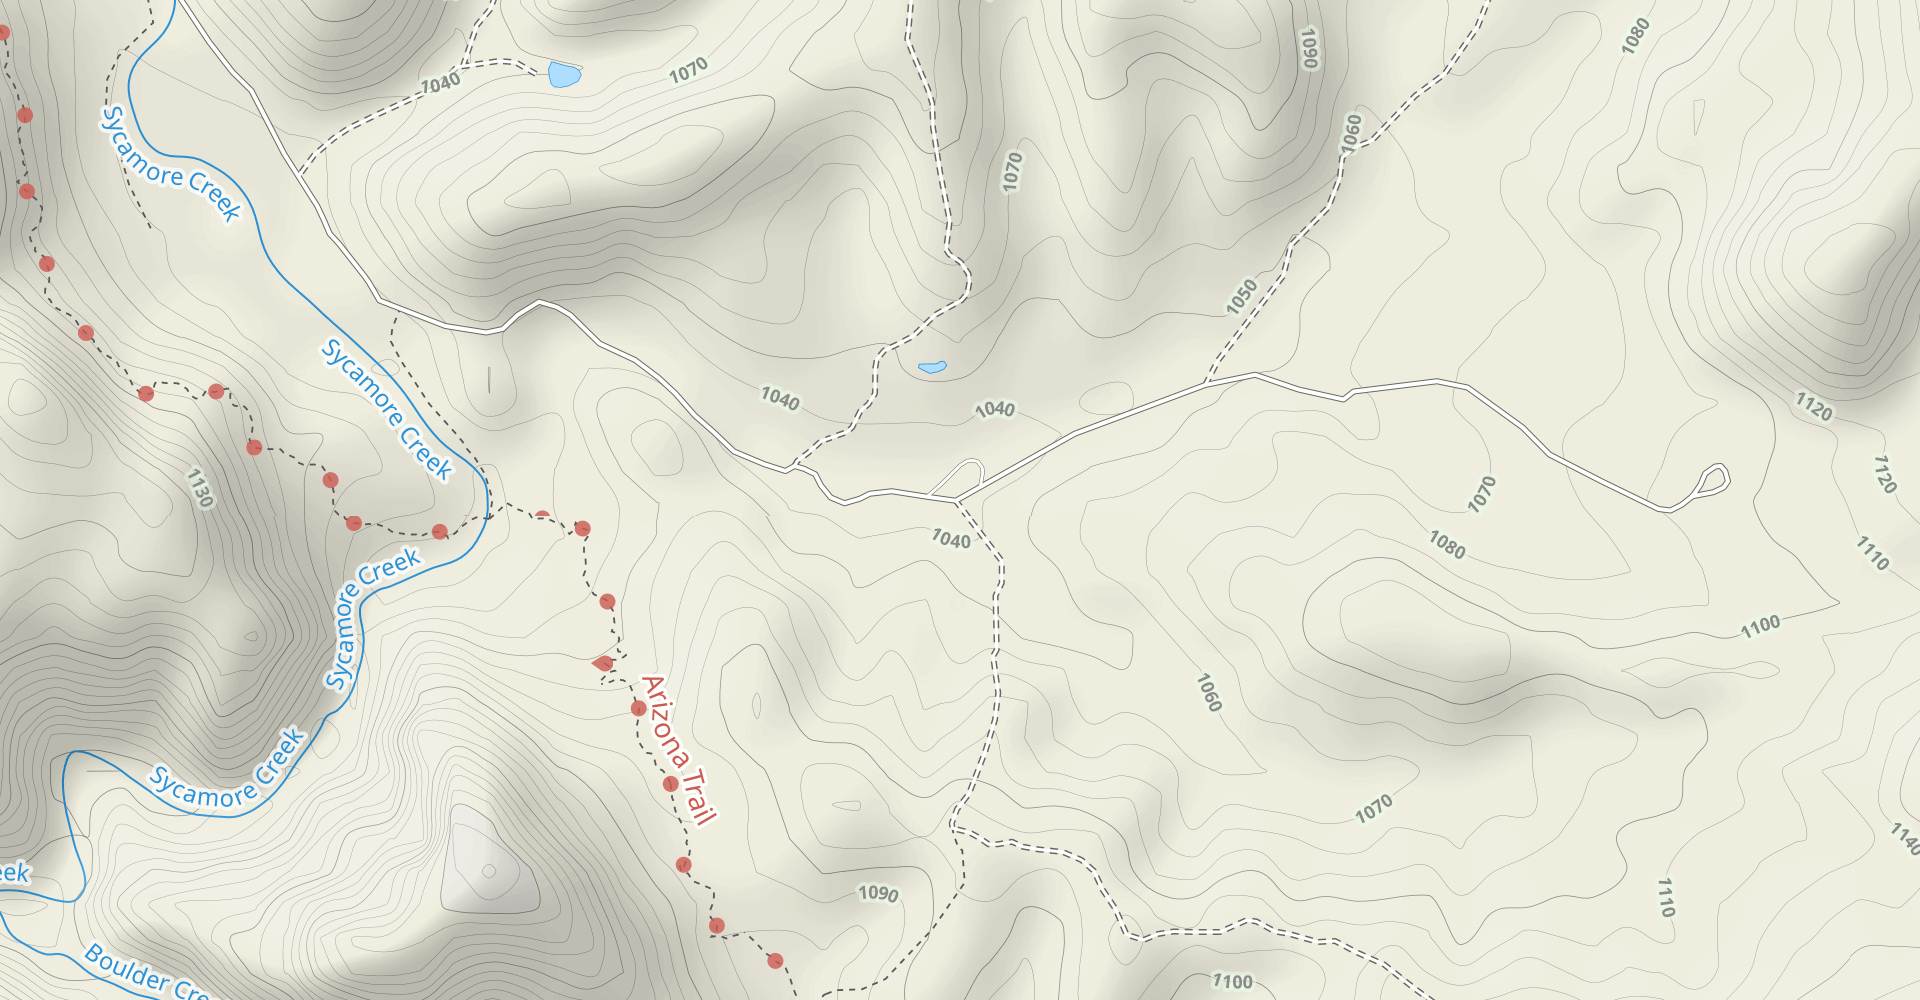 Boulder Creek Trail